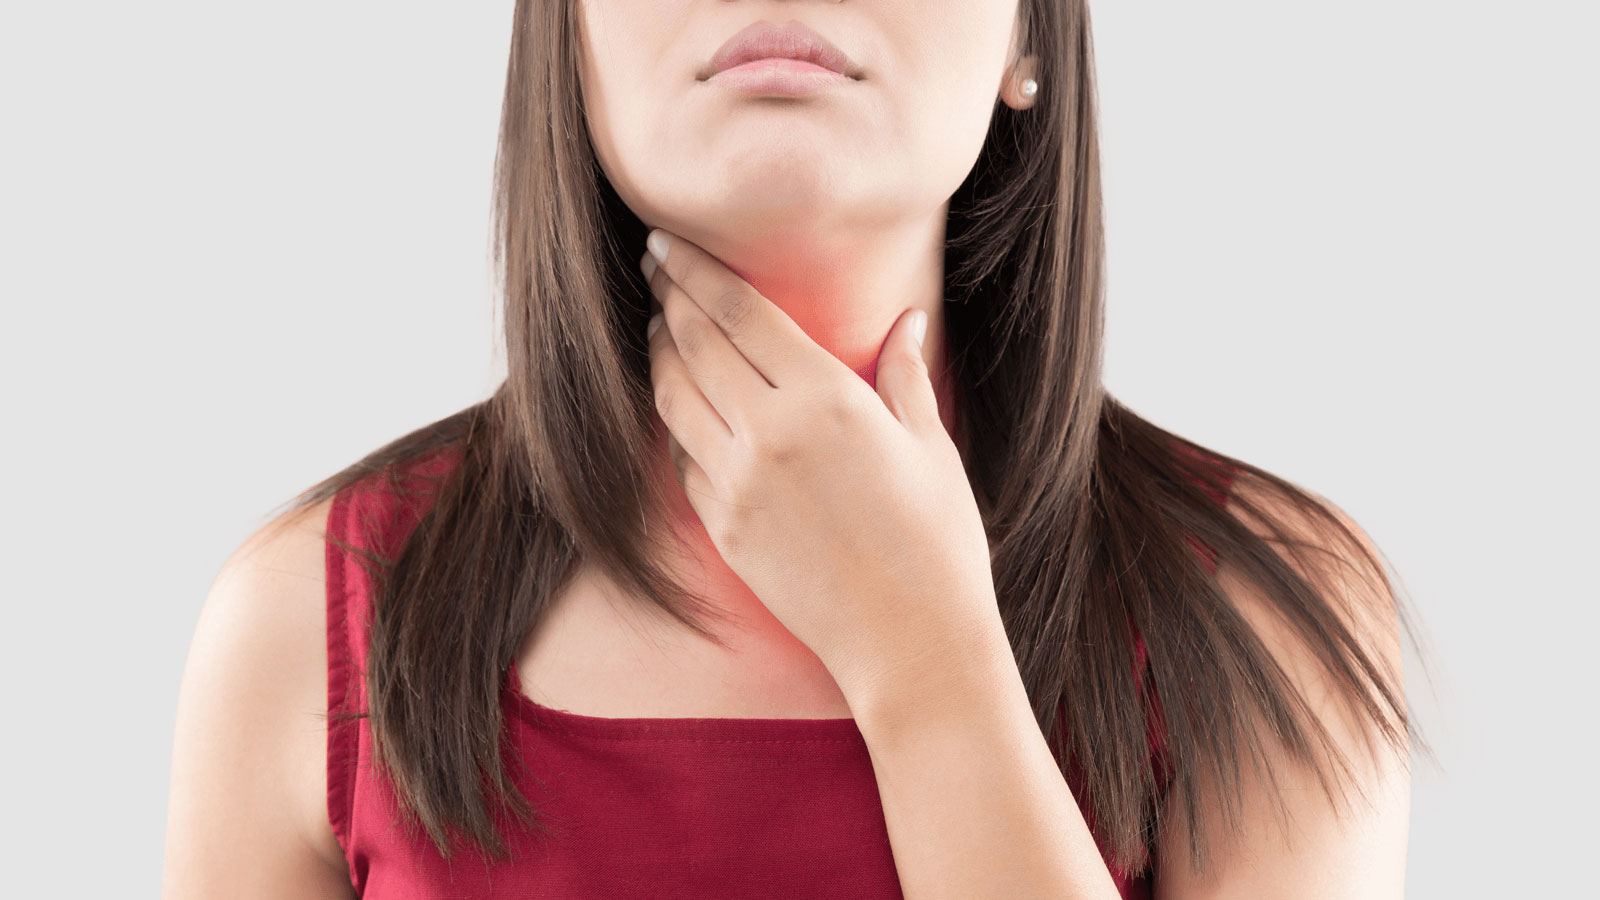 Đau rát cổ họng gây nhiều khó chịu cho người bệnh